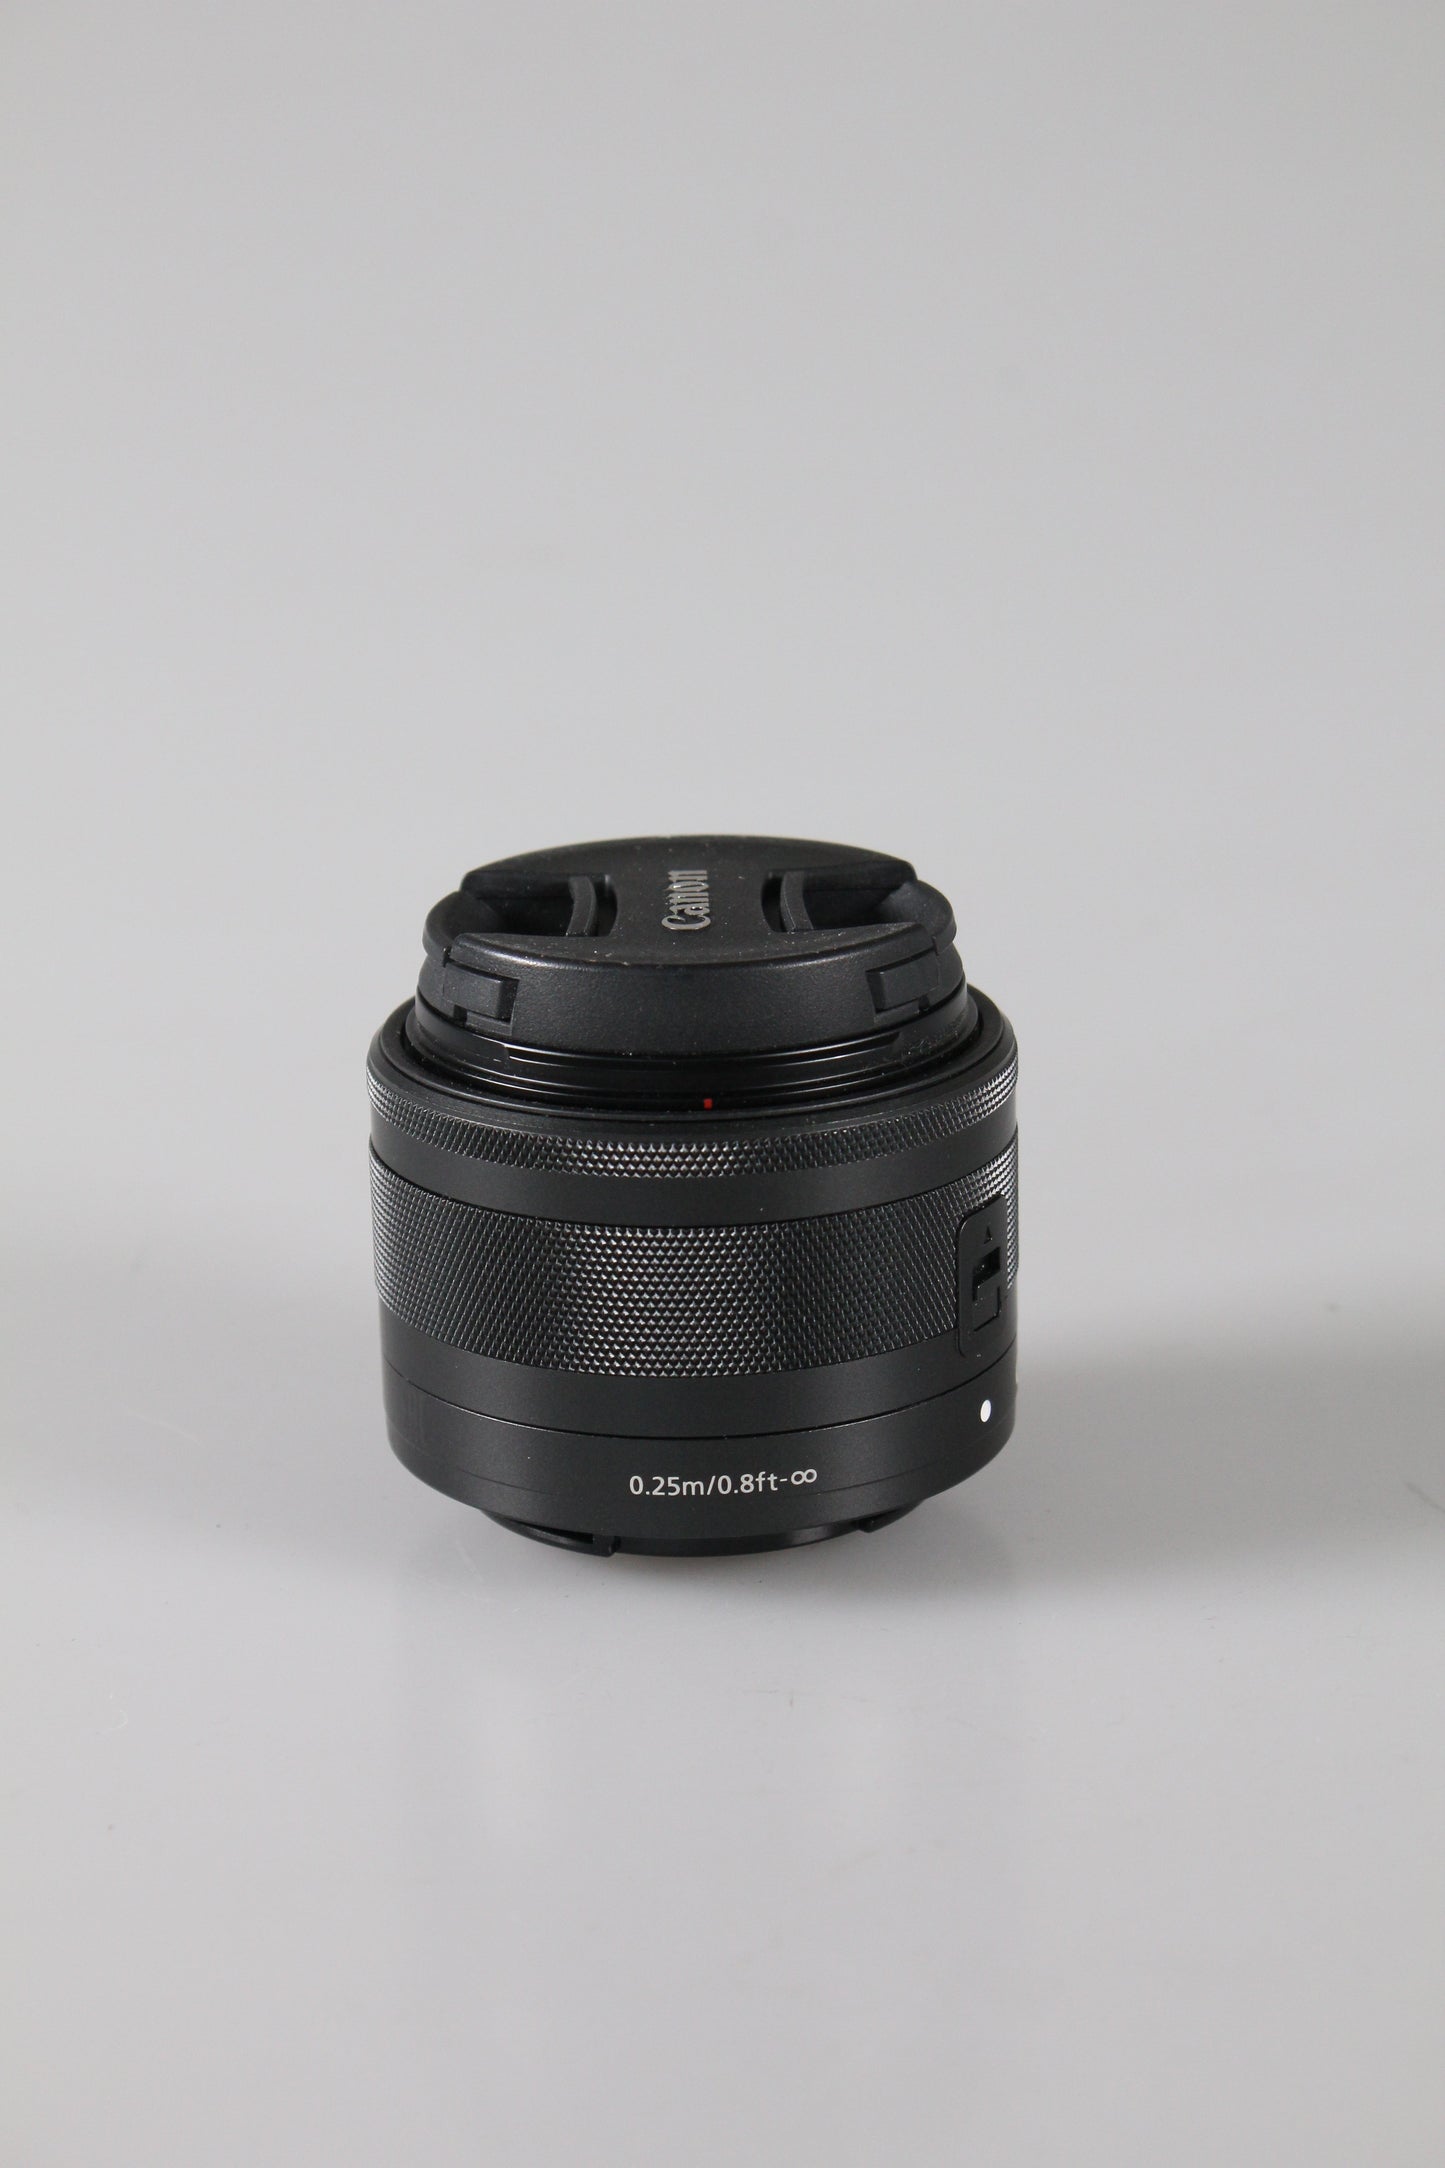 Canon EF-M 15-45mm f3.5-6.3 IS STM Lens digital